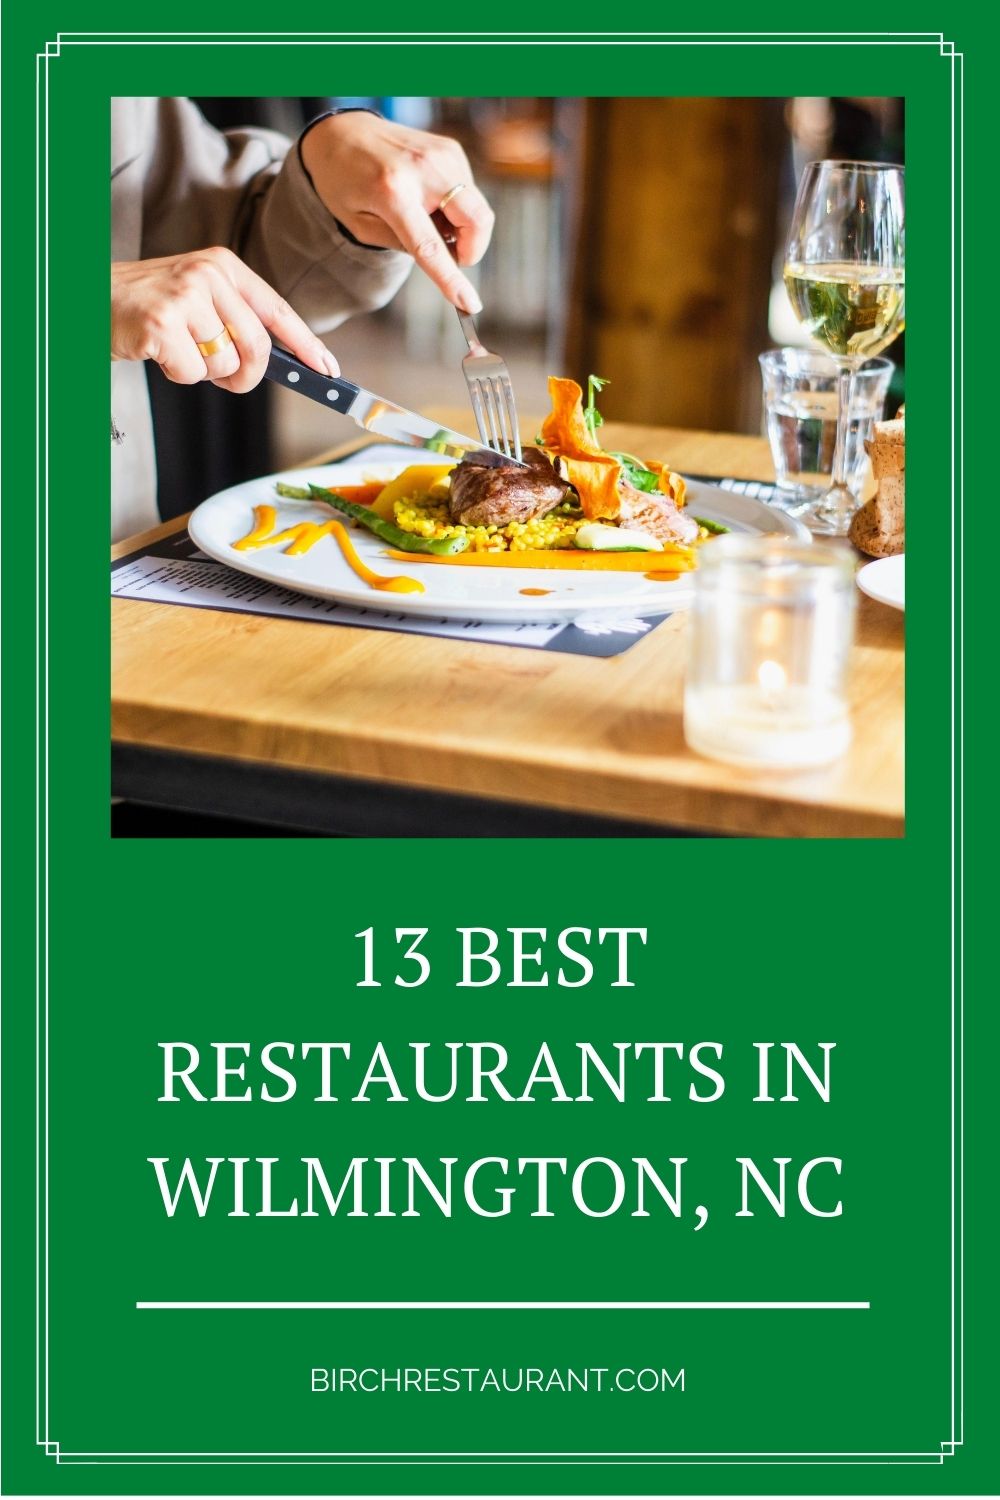 Best Restaurants in Wilmington